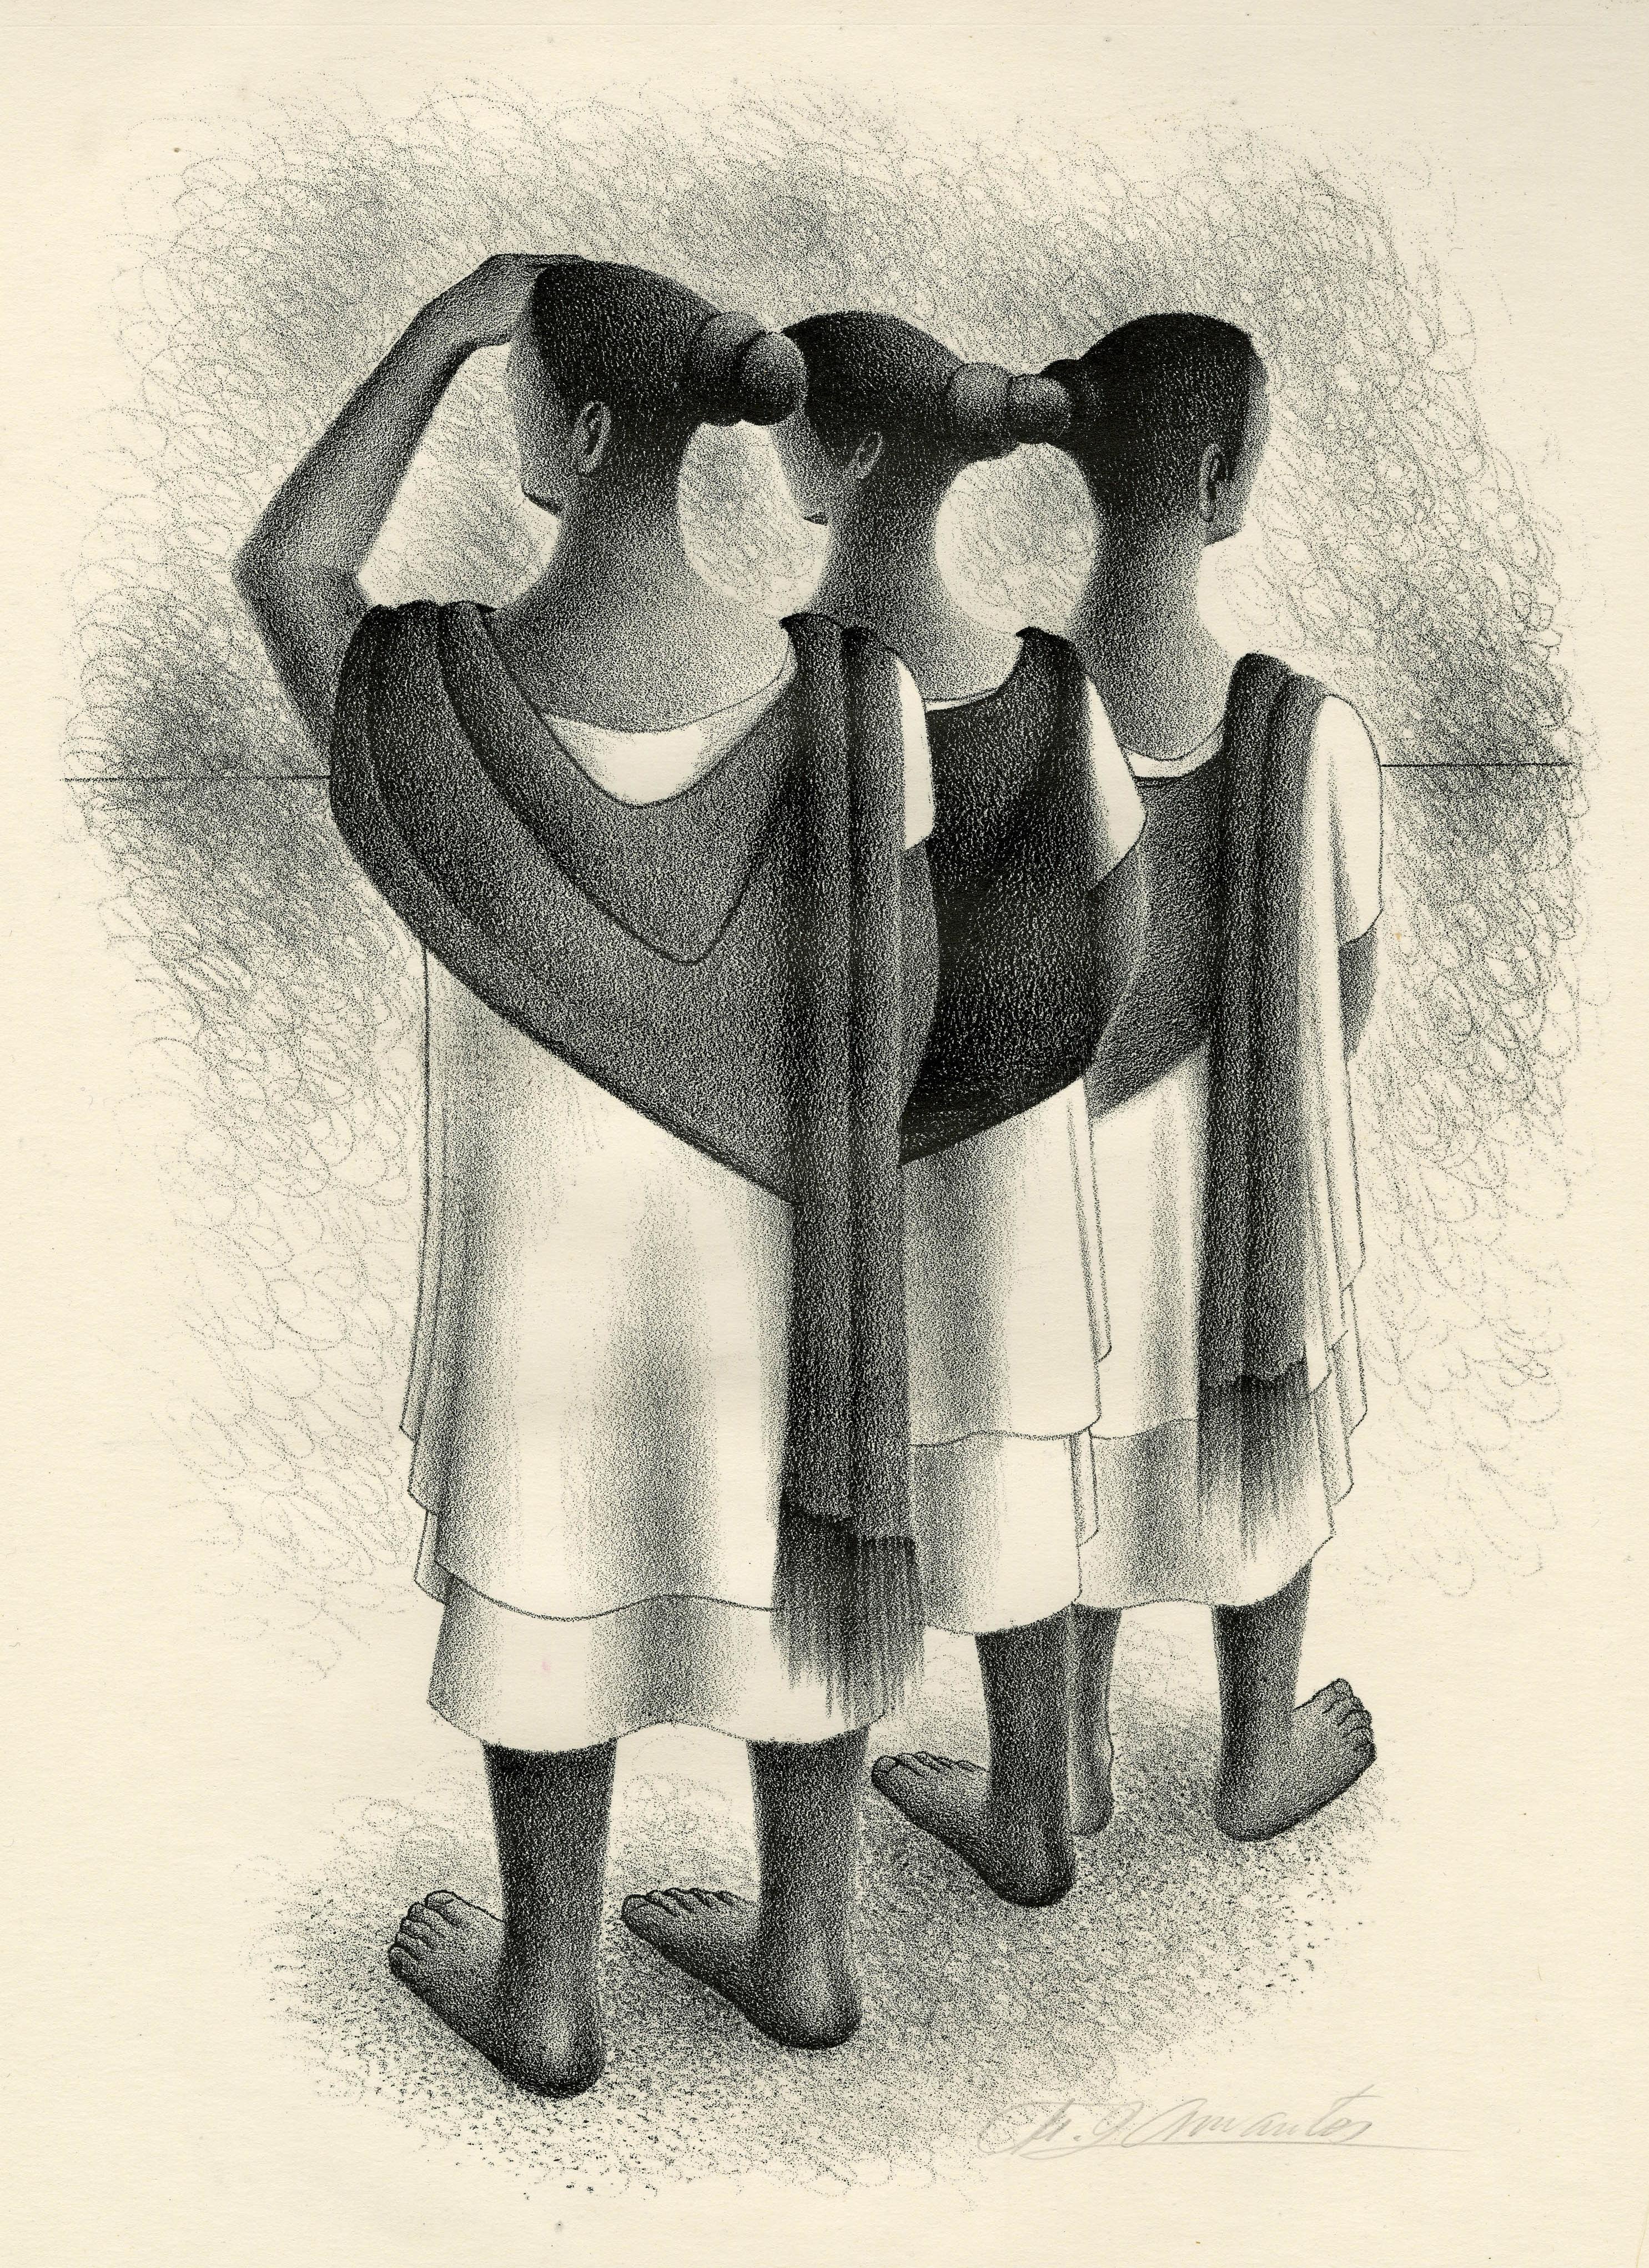 Trio Maya
Lithographie, 1950
Signé au crayon en bas à droite (voir photo)
Edition 250 pour Associated American Artists
Publié en 1950
Référence : Cat. AAA : 1950-05 ; 1958-01
                   Indice AAA 1087
Condit : Excellent
Taille de l'image :